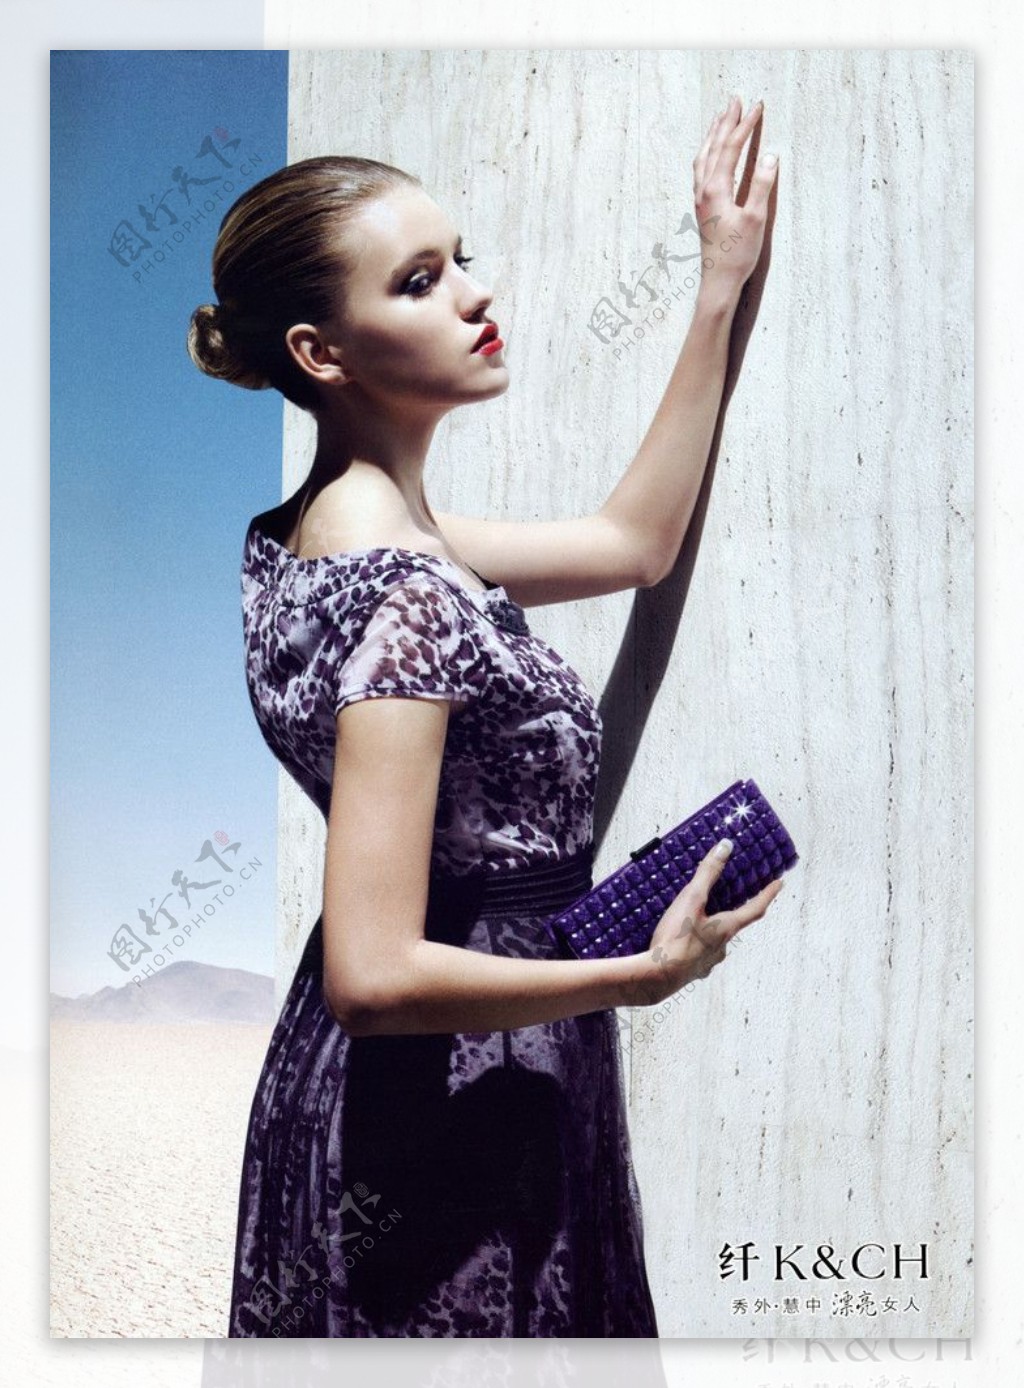 纤形象代言人LOGO国际时尚女装欧美女模2010年时尚夏装靓丽时尚休闲长裙手包图片